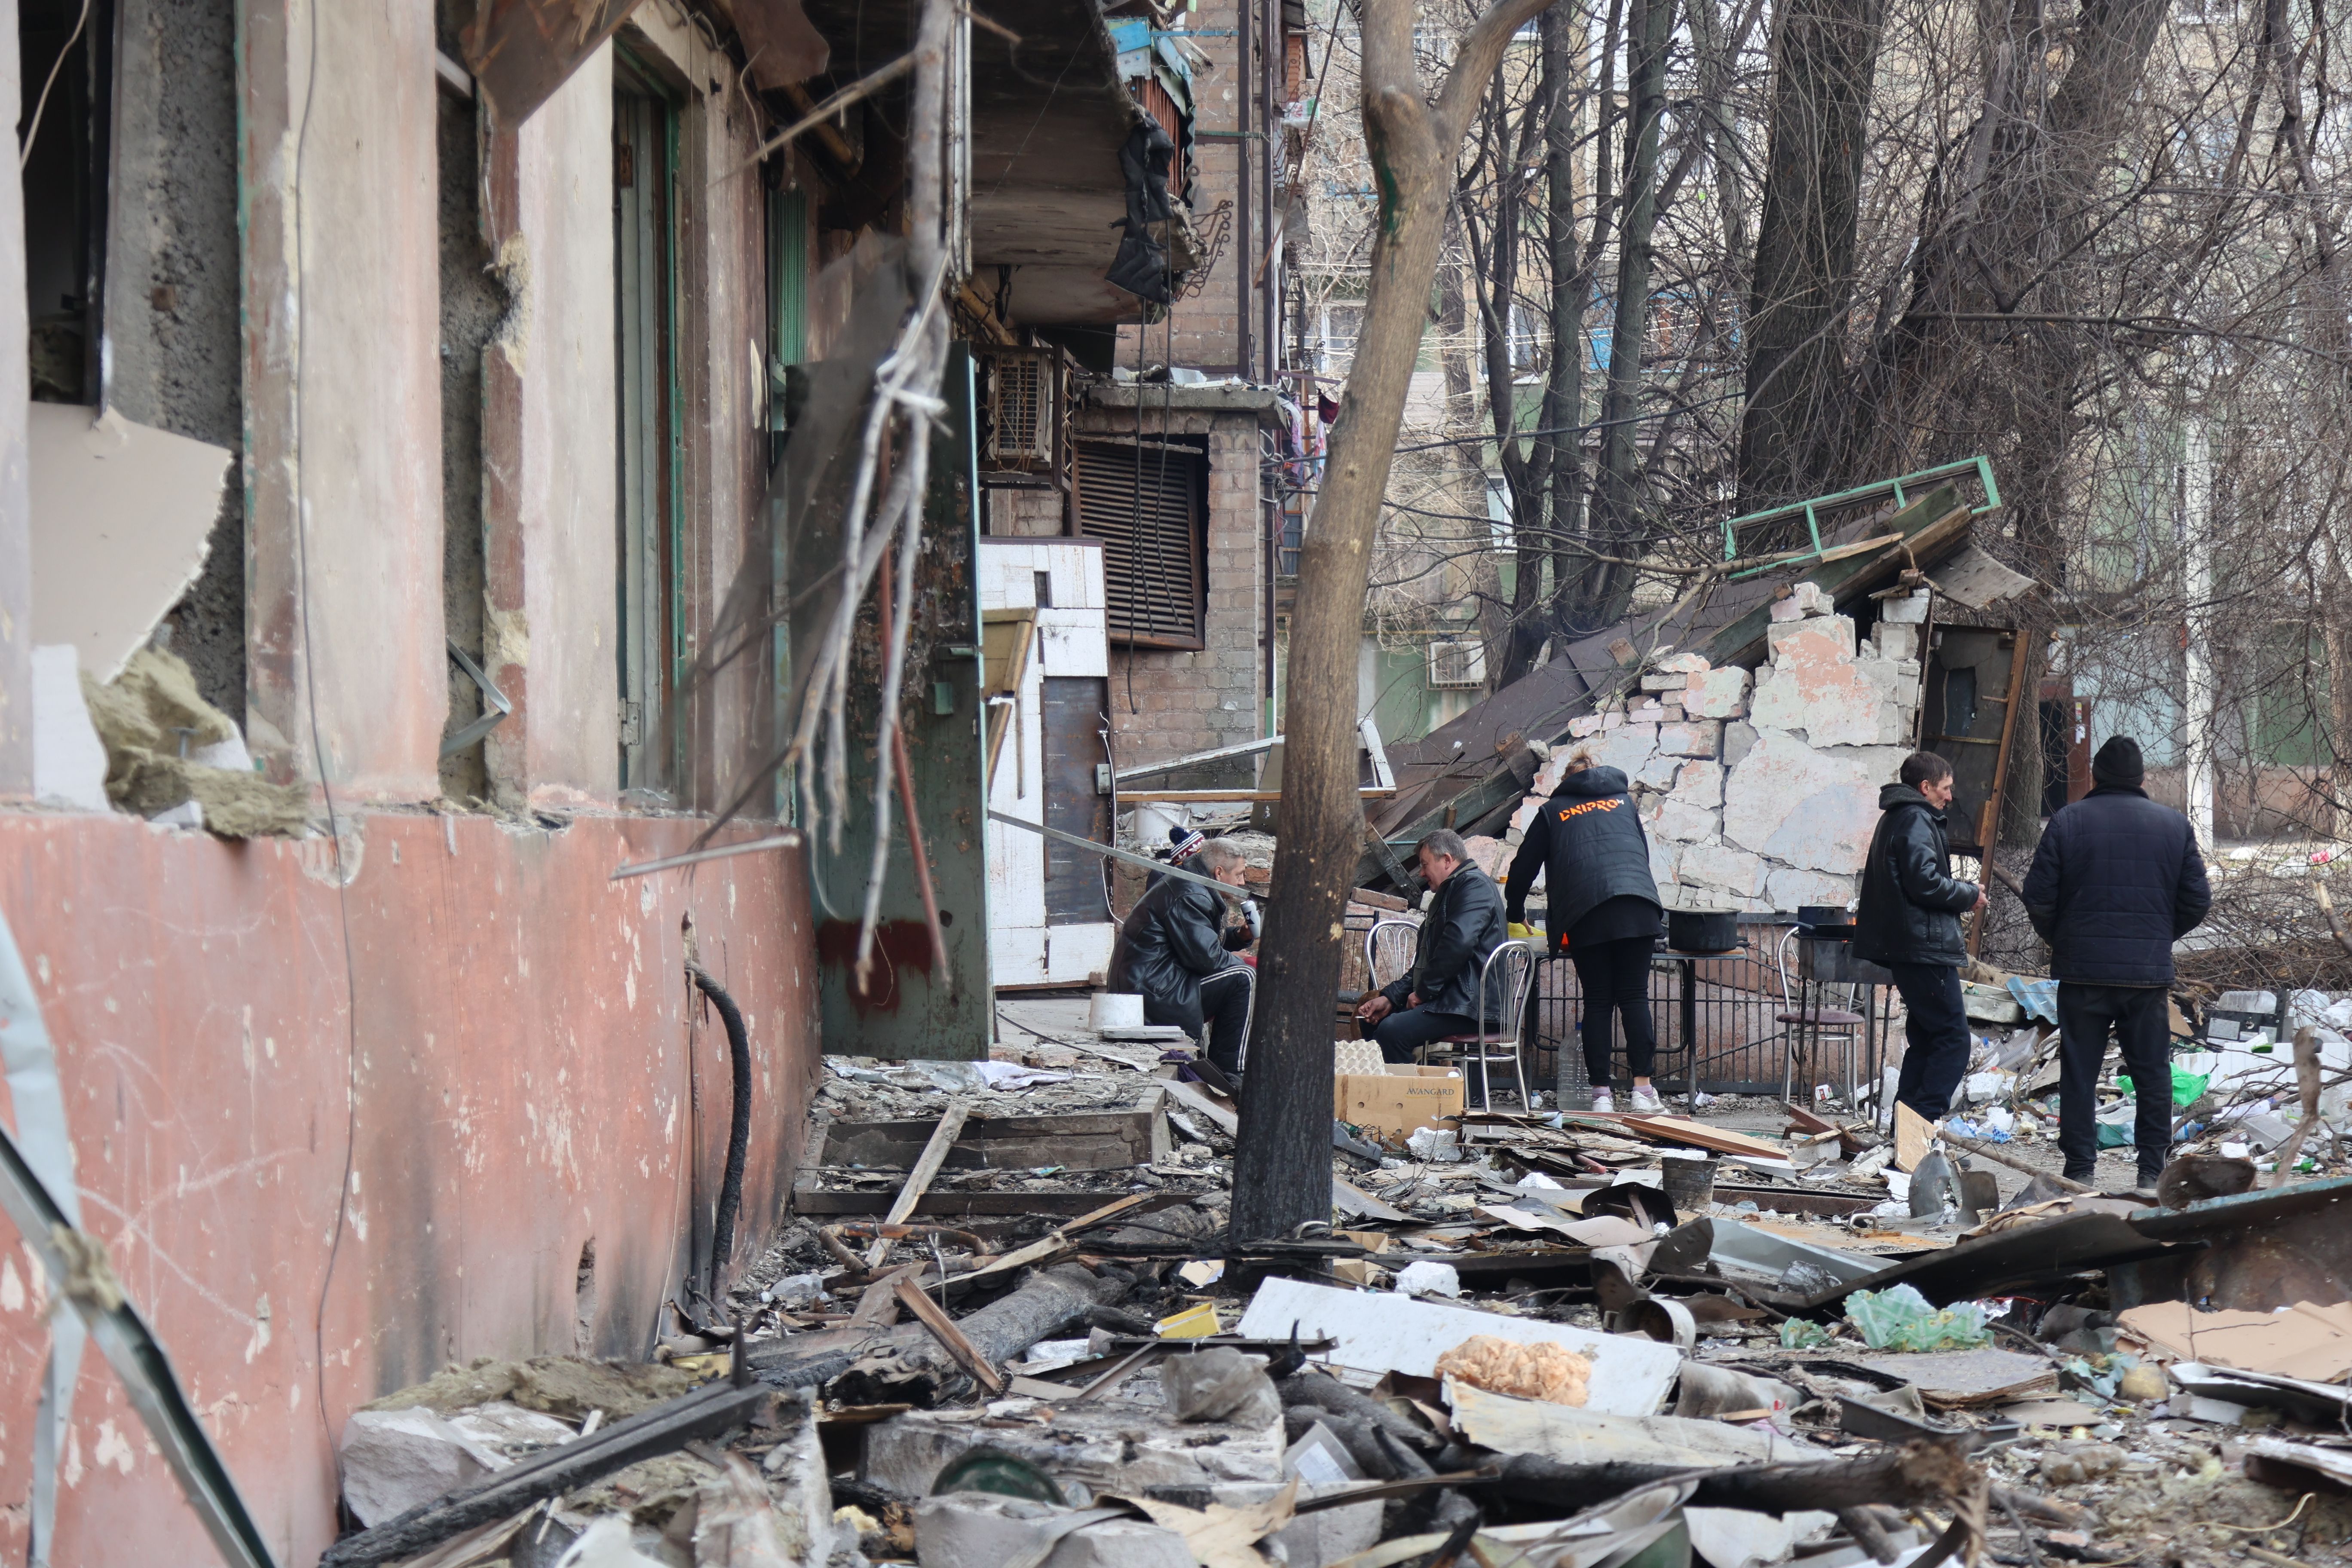     Widok zniszczonych budynków i pojazdów po zbombardowaniu ukraińskiego miasta Mariupol, będącego pod kontrolą armii rosyjskiej i prorosyjskich separatystów, 29 marca.